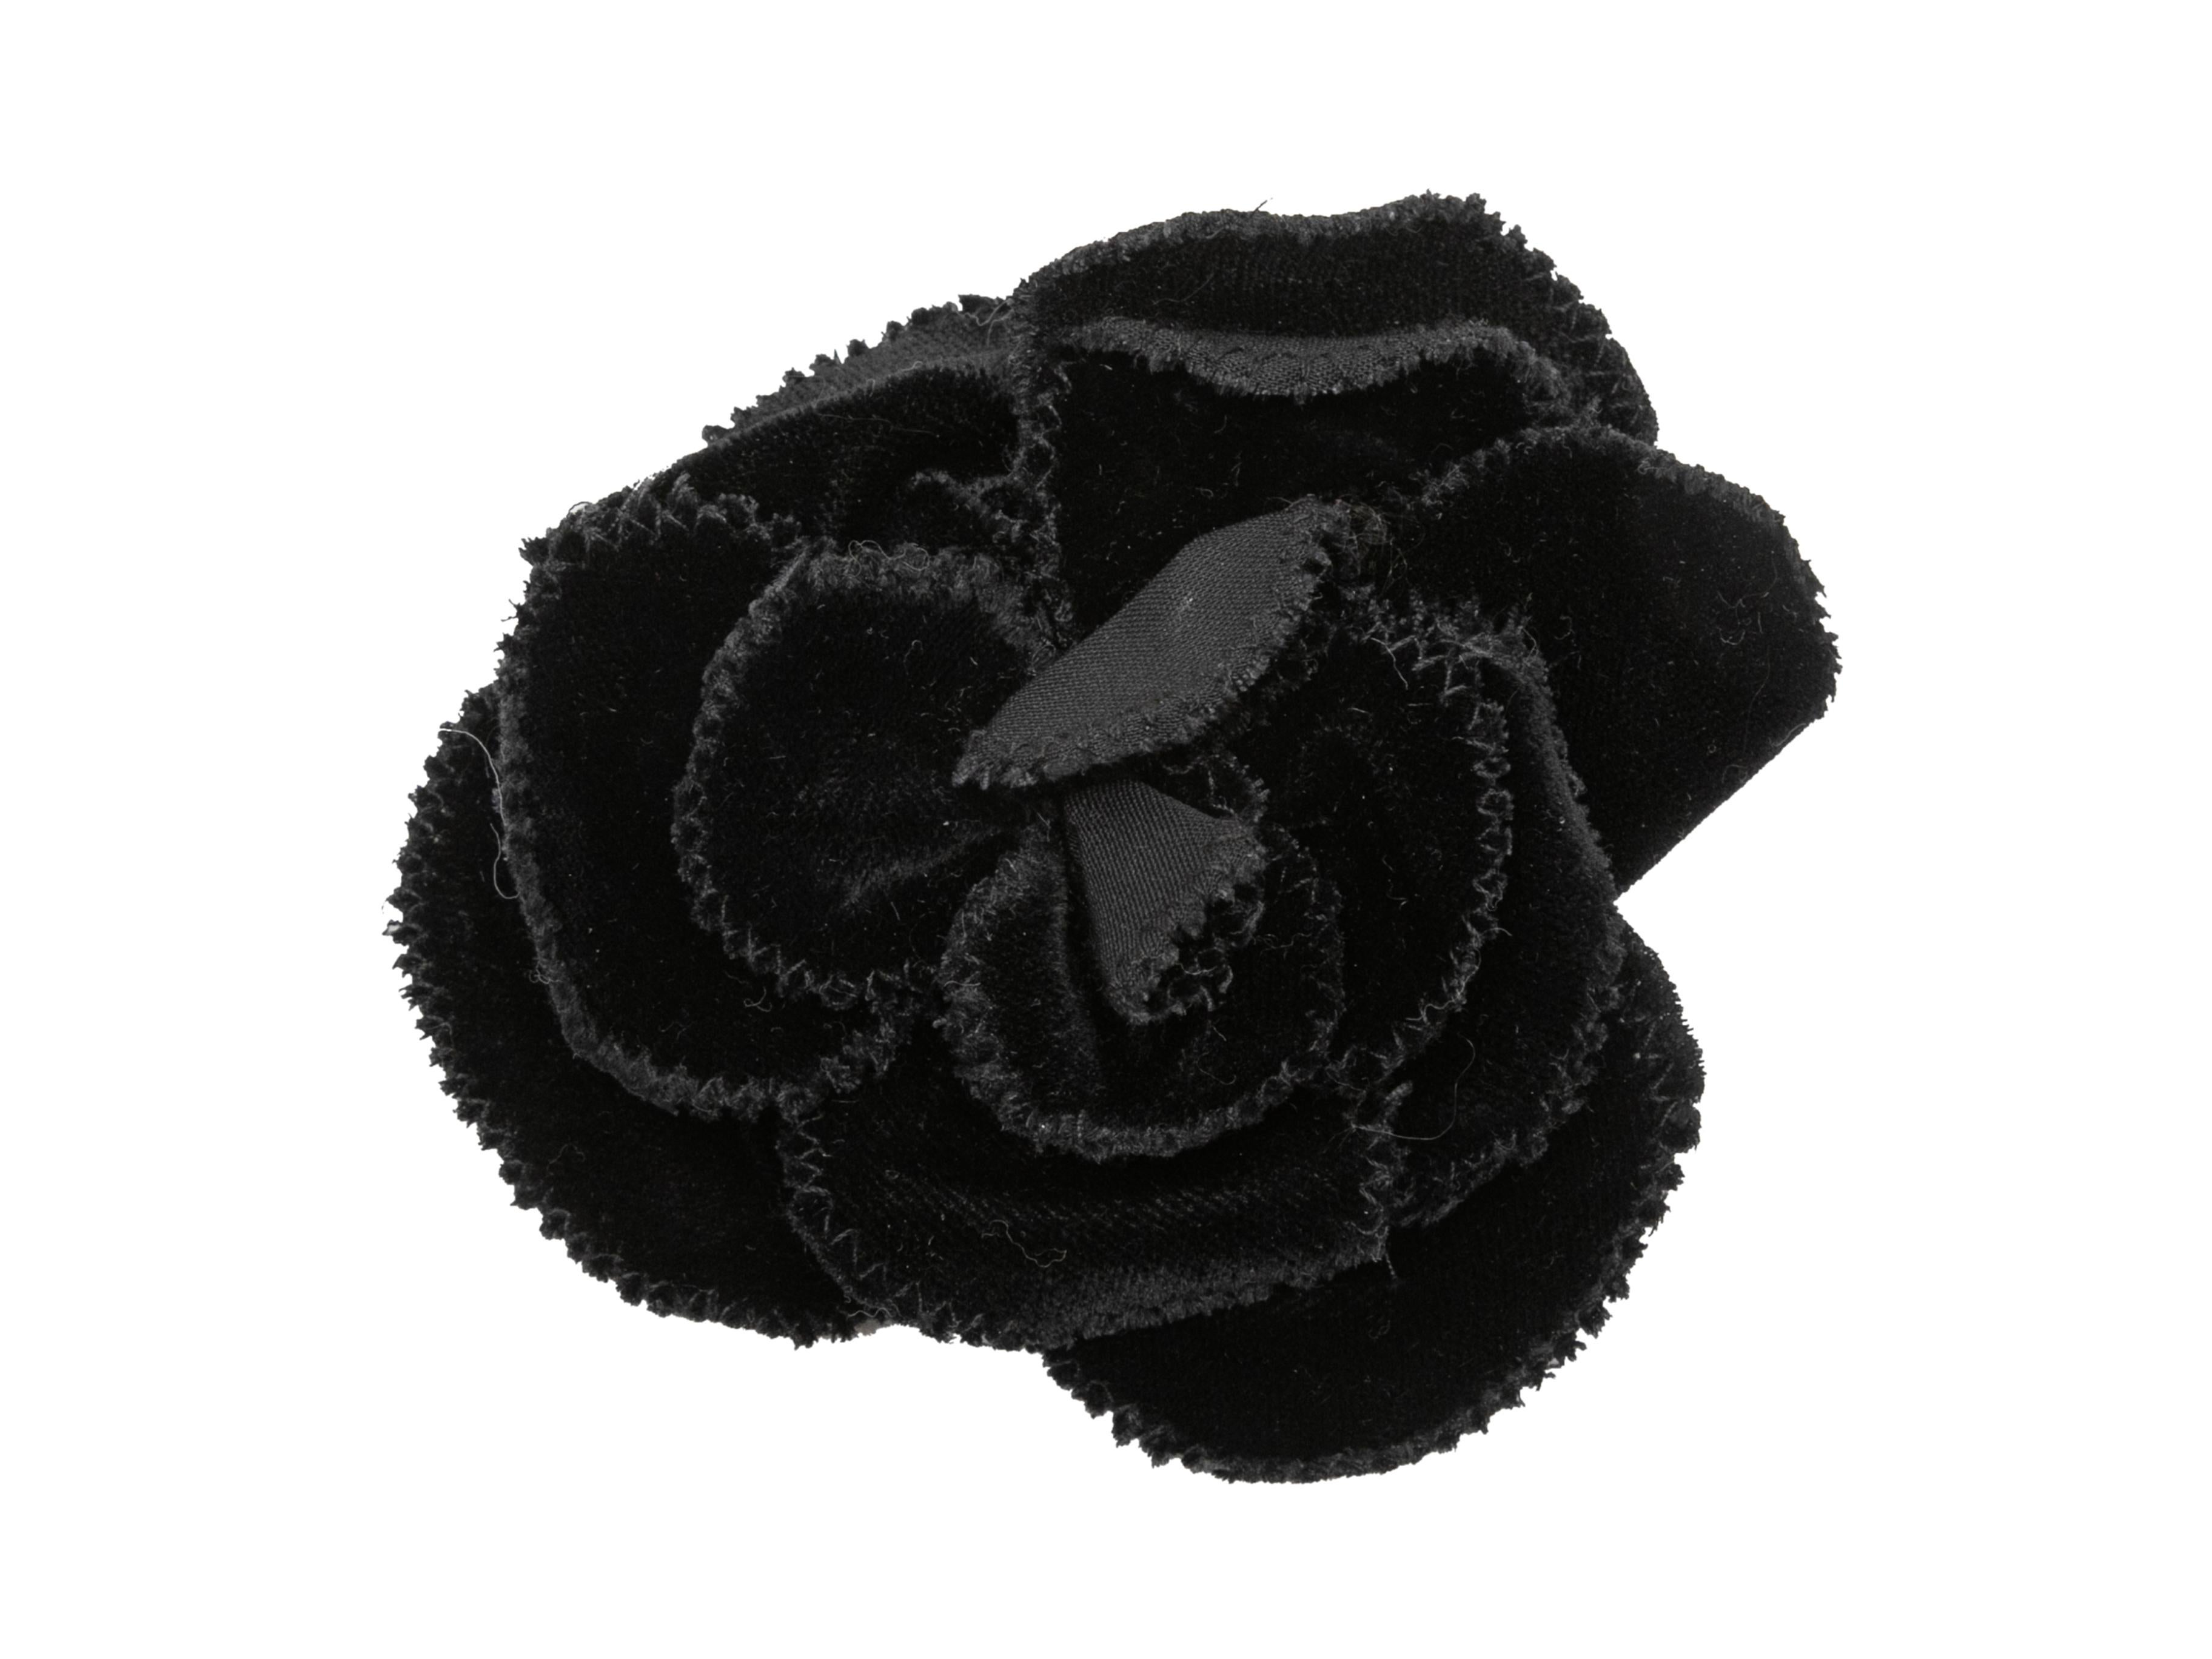 Black velvet camellia lapel pin by Chanel. 4